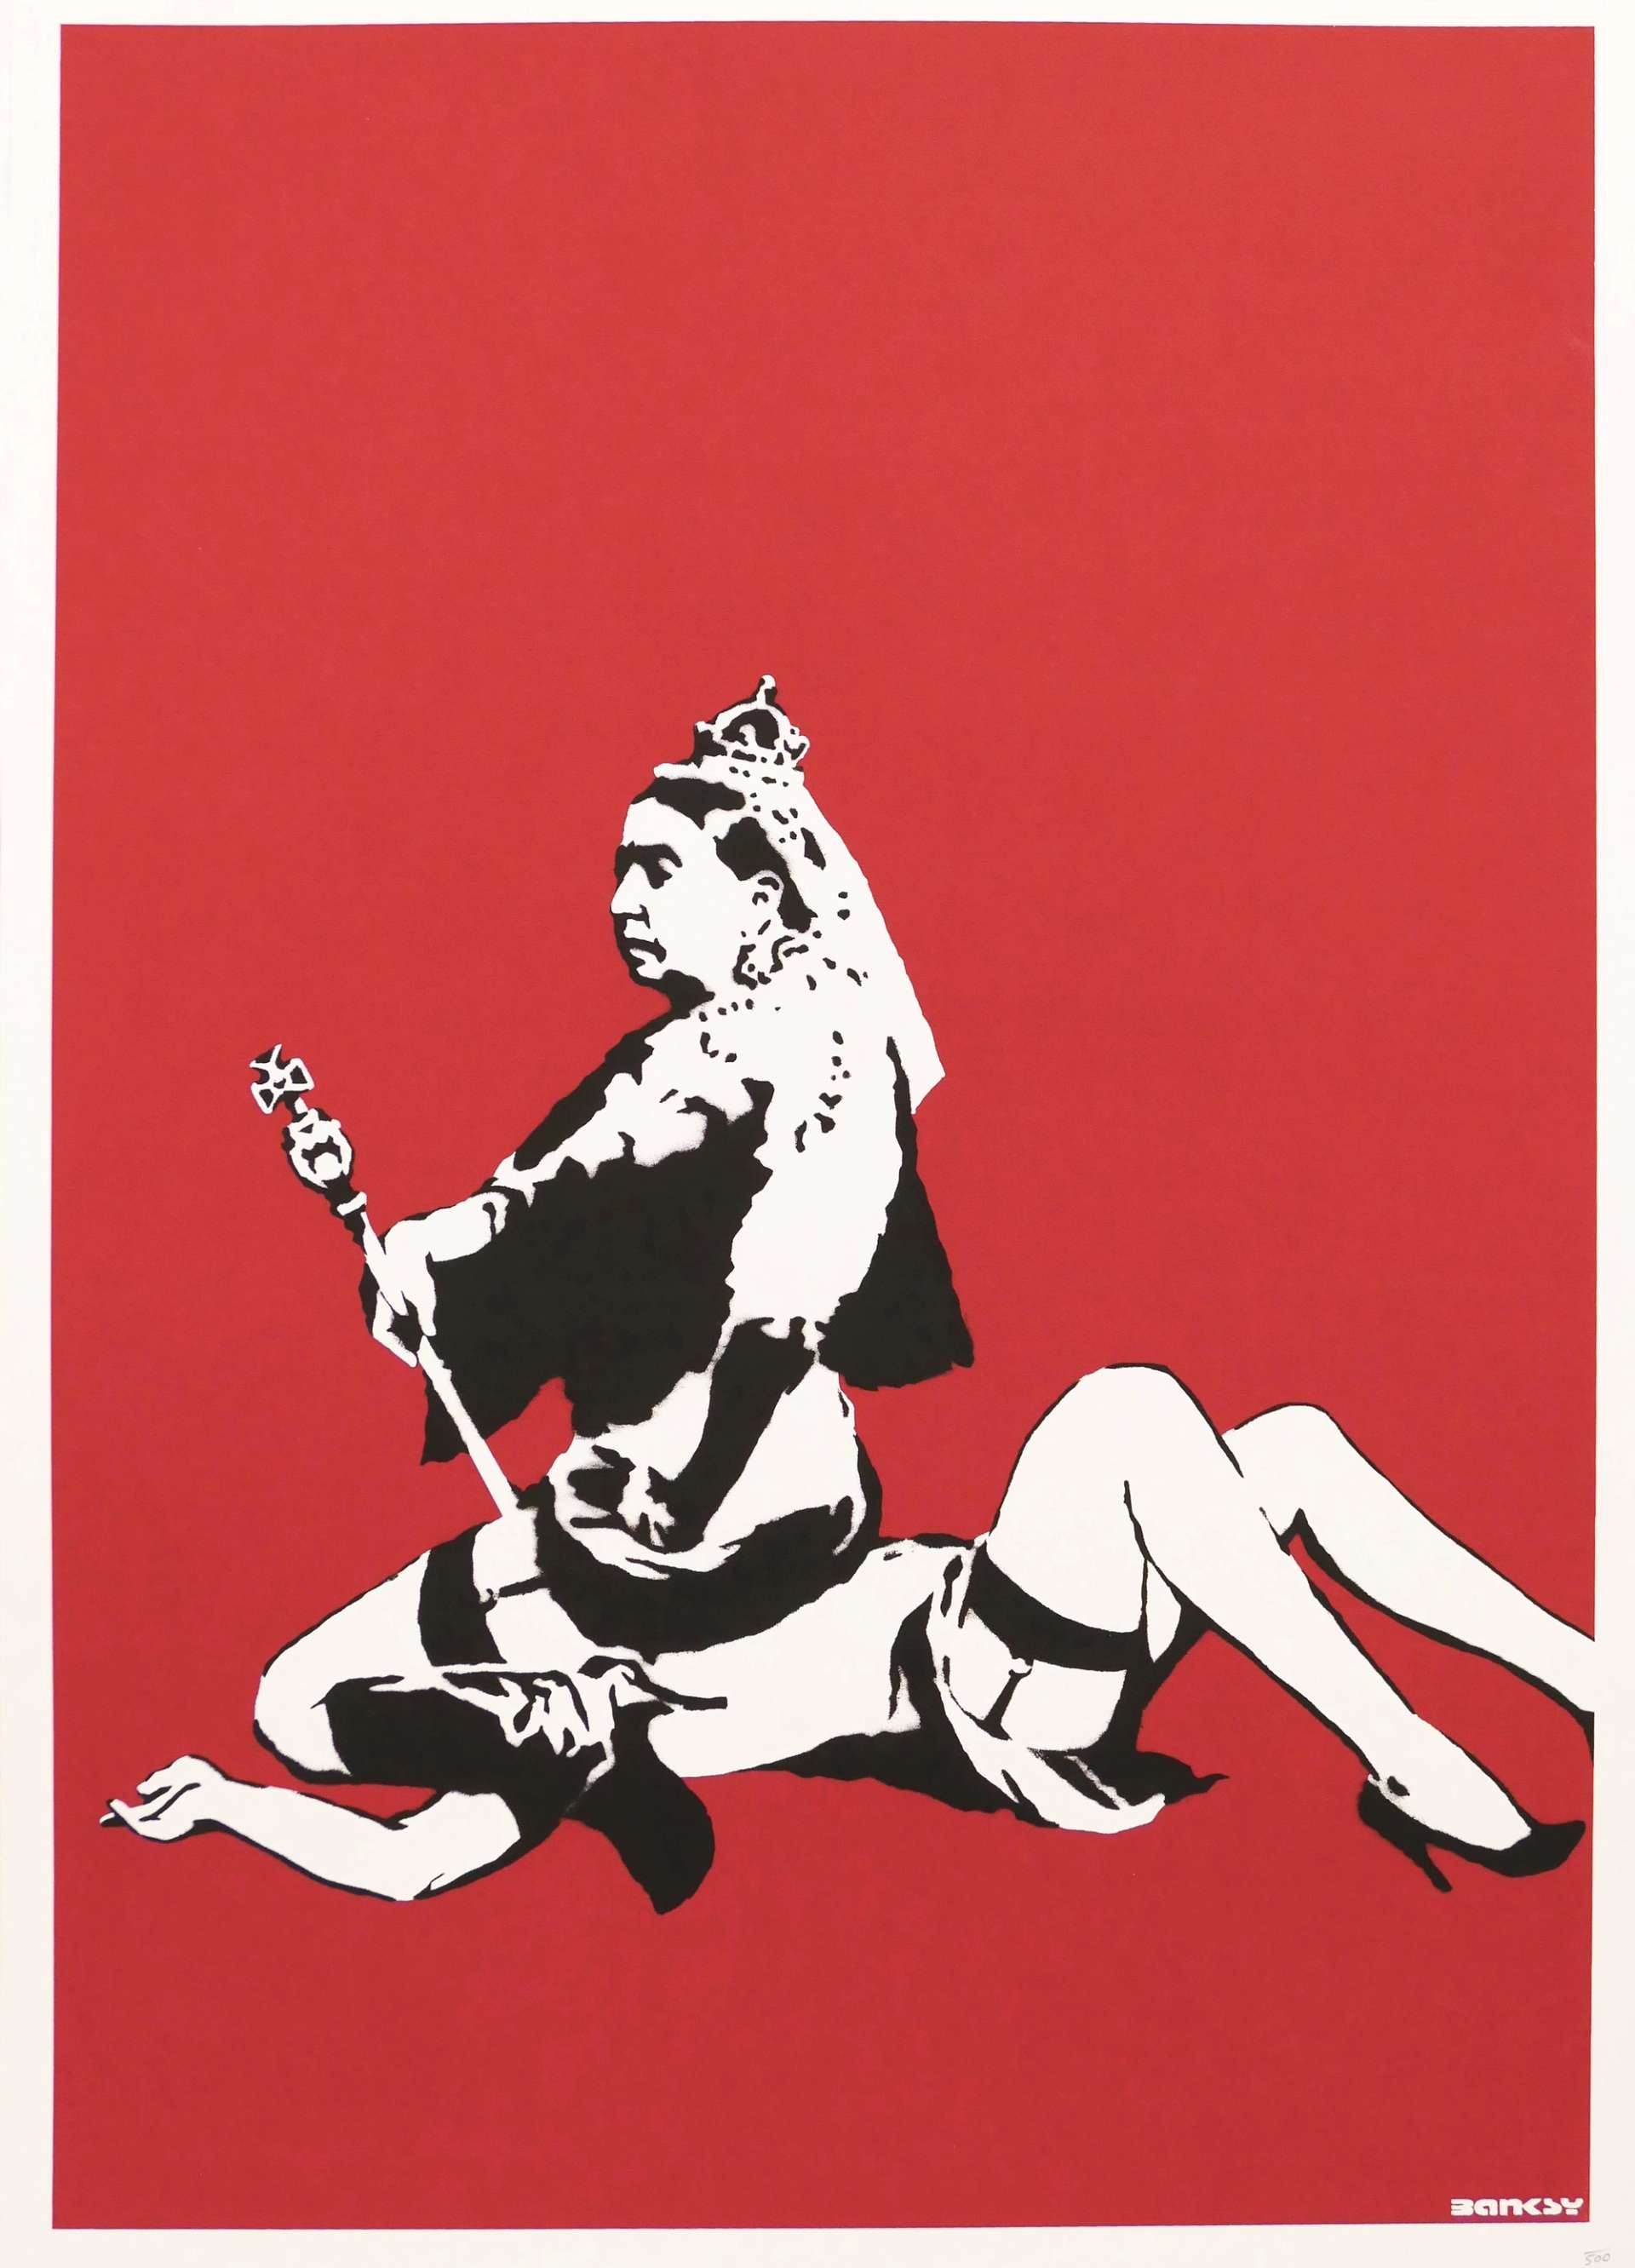 Queen Victoria by Banksy - MyArtBroker